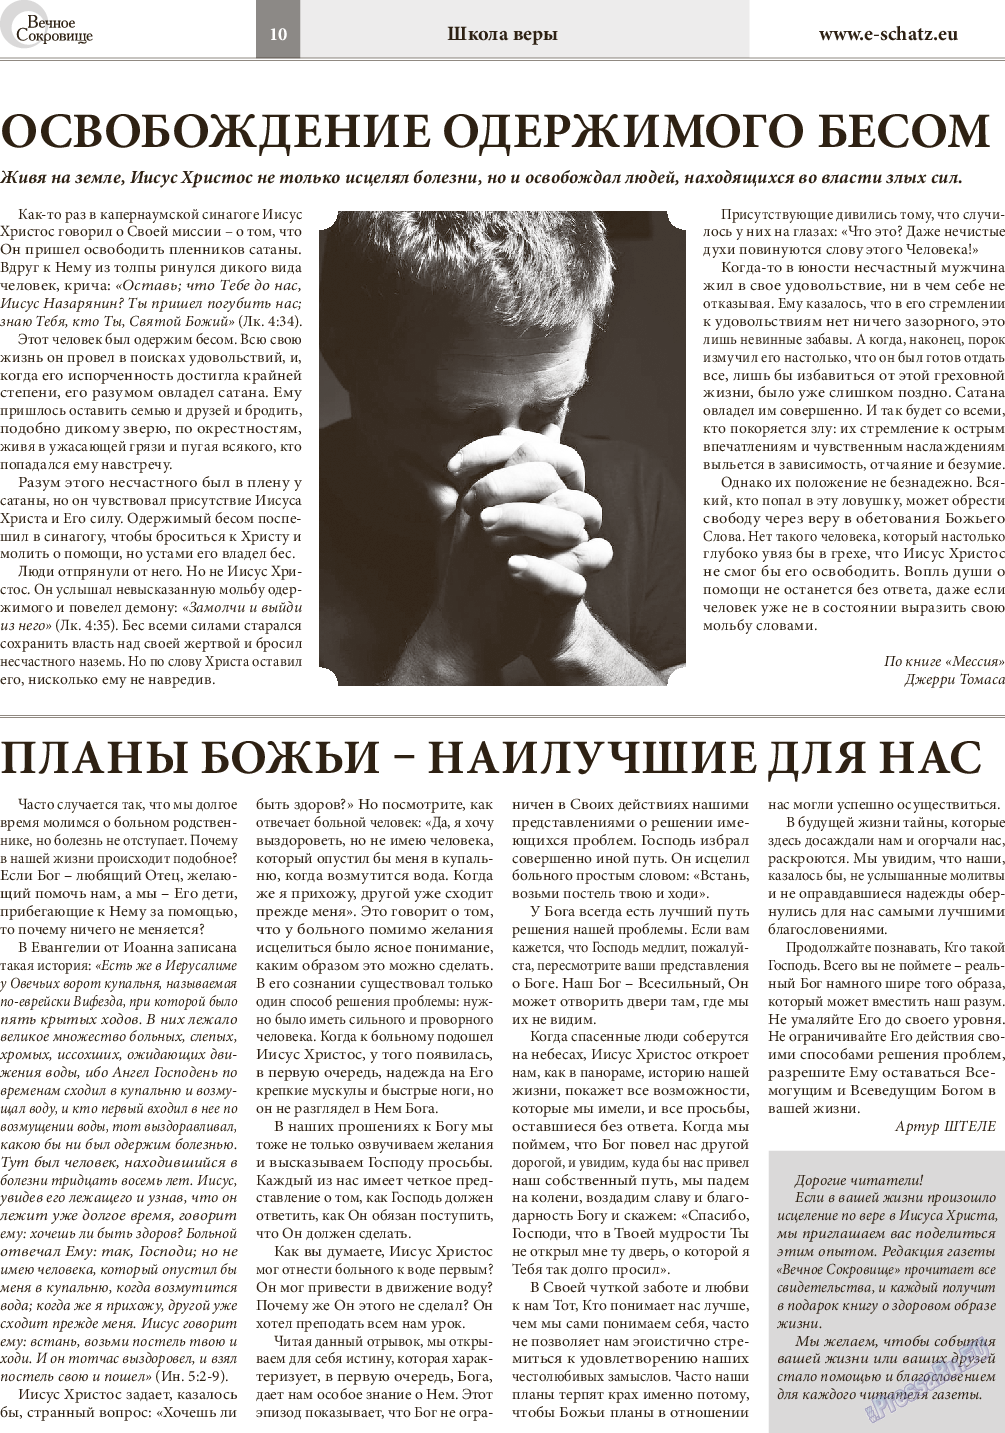 Вечное сокровище, газета. 2014 №6 стр.10